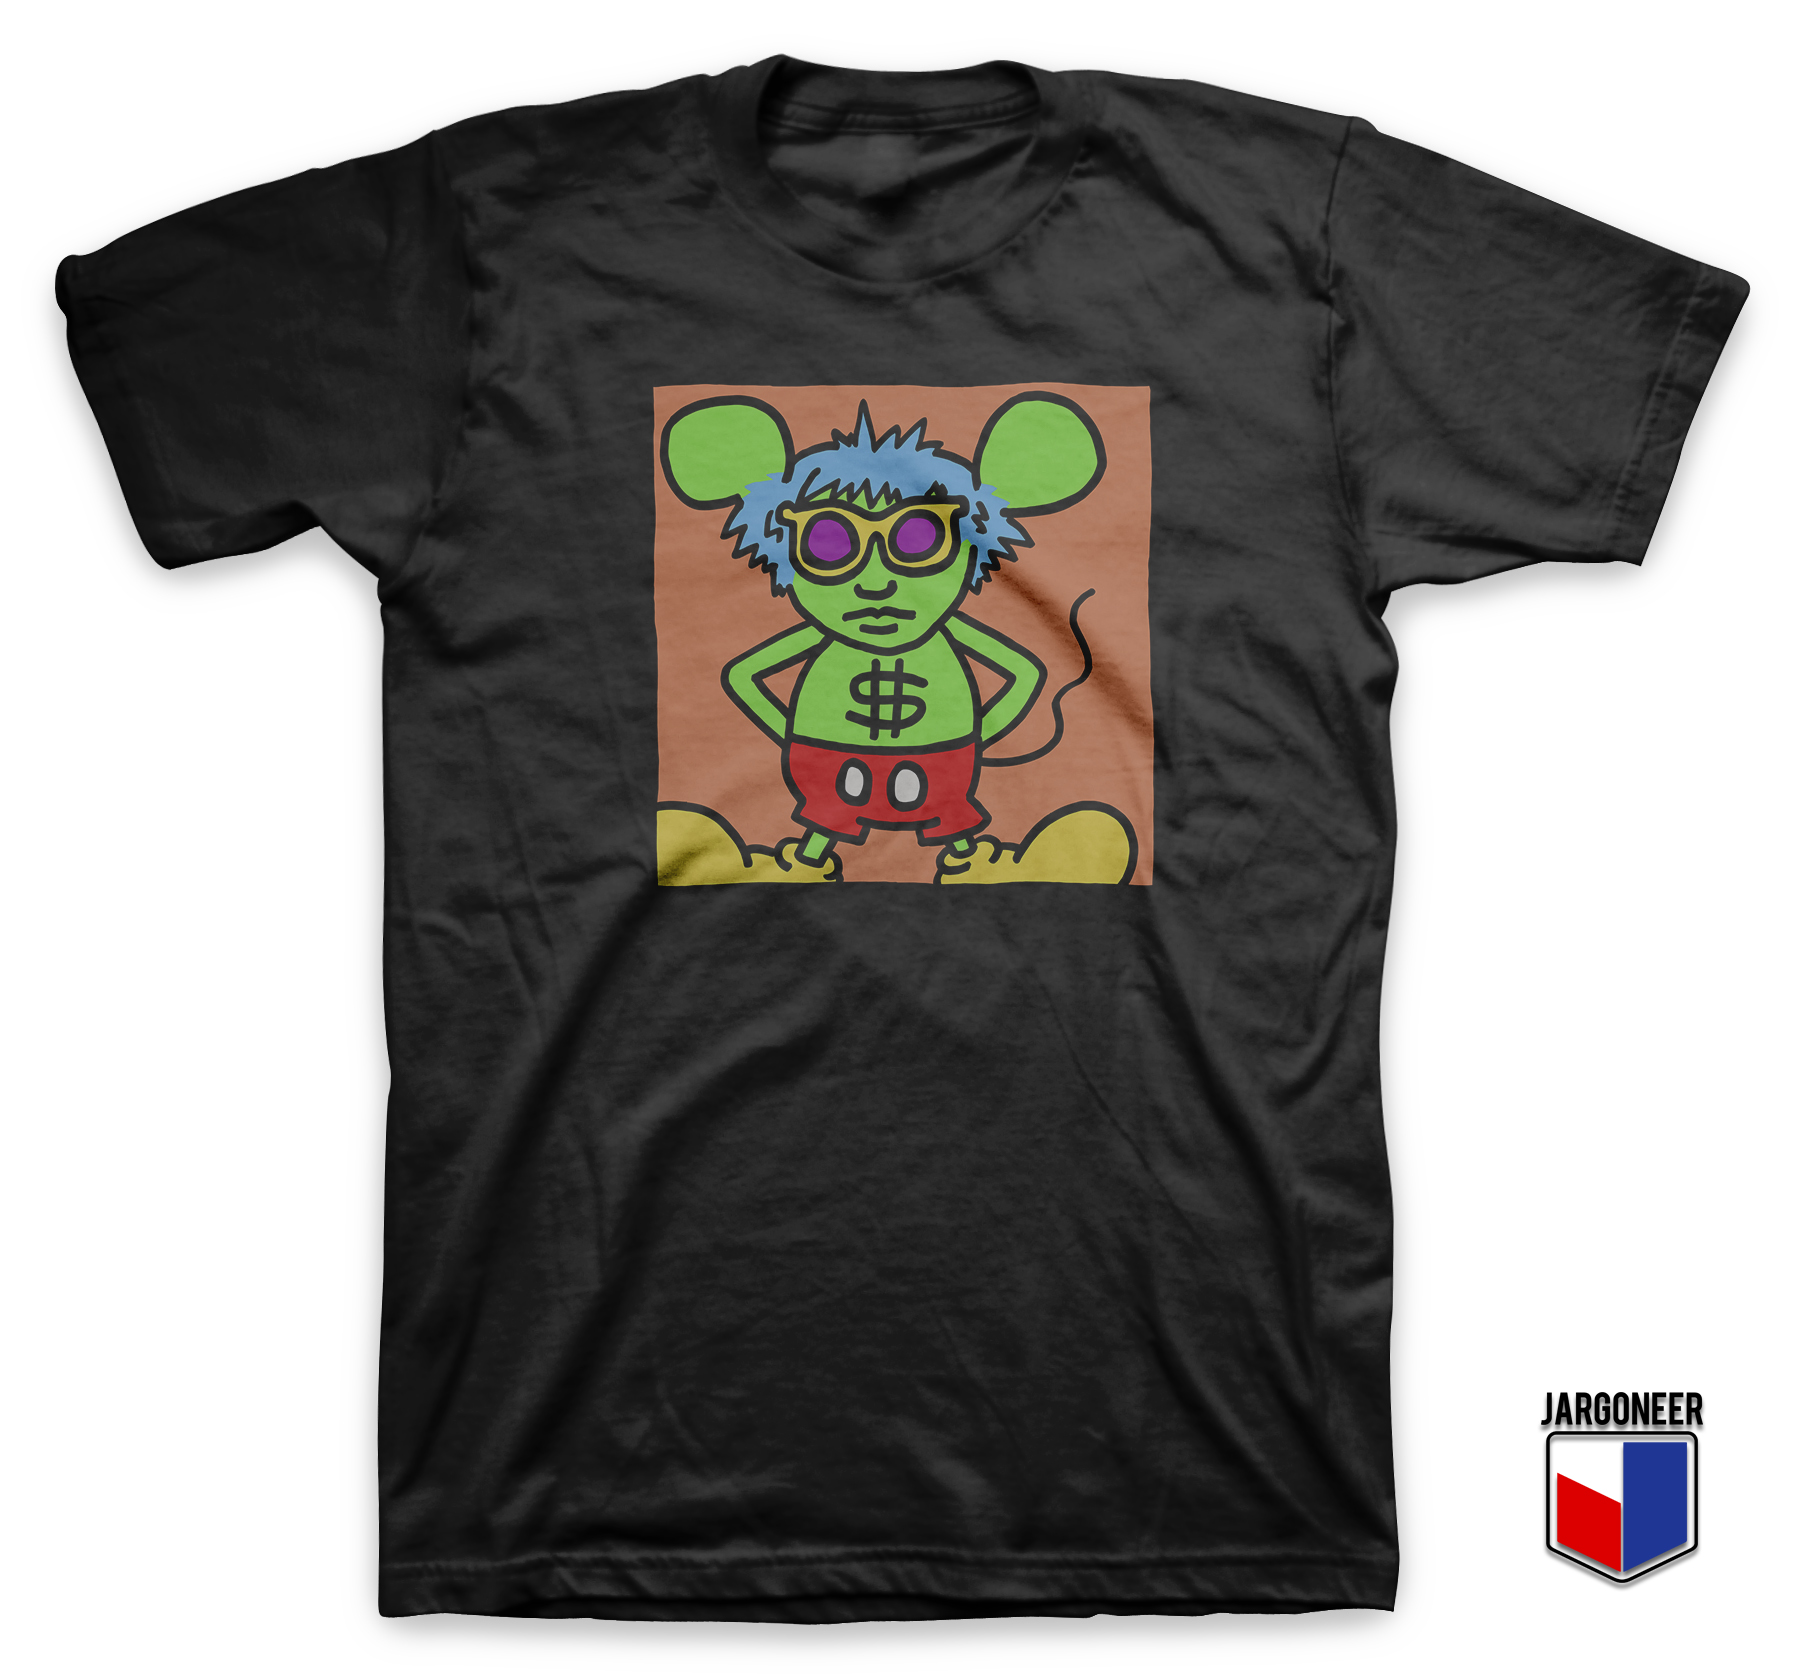 The Rat Man Black T Shirt - Shop Unique Graphic Cool Shirt Designs